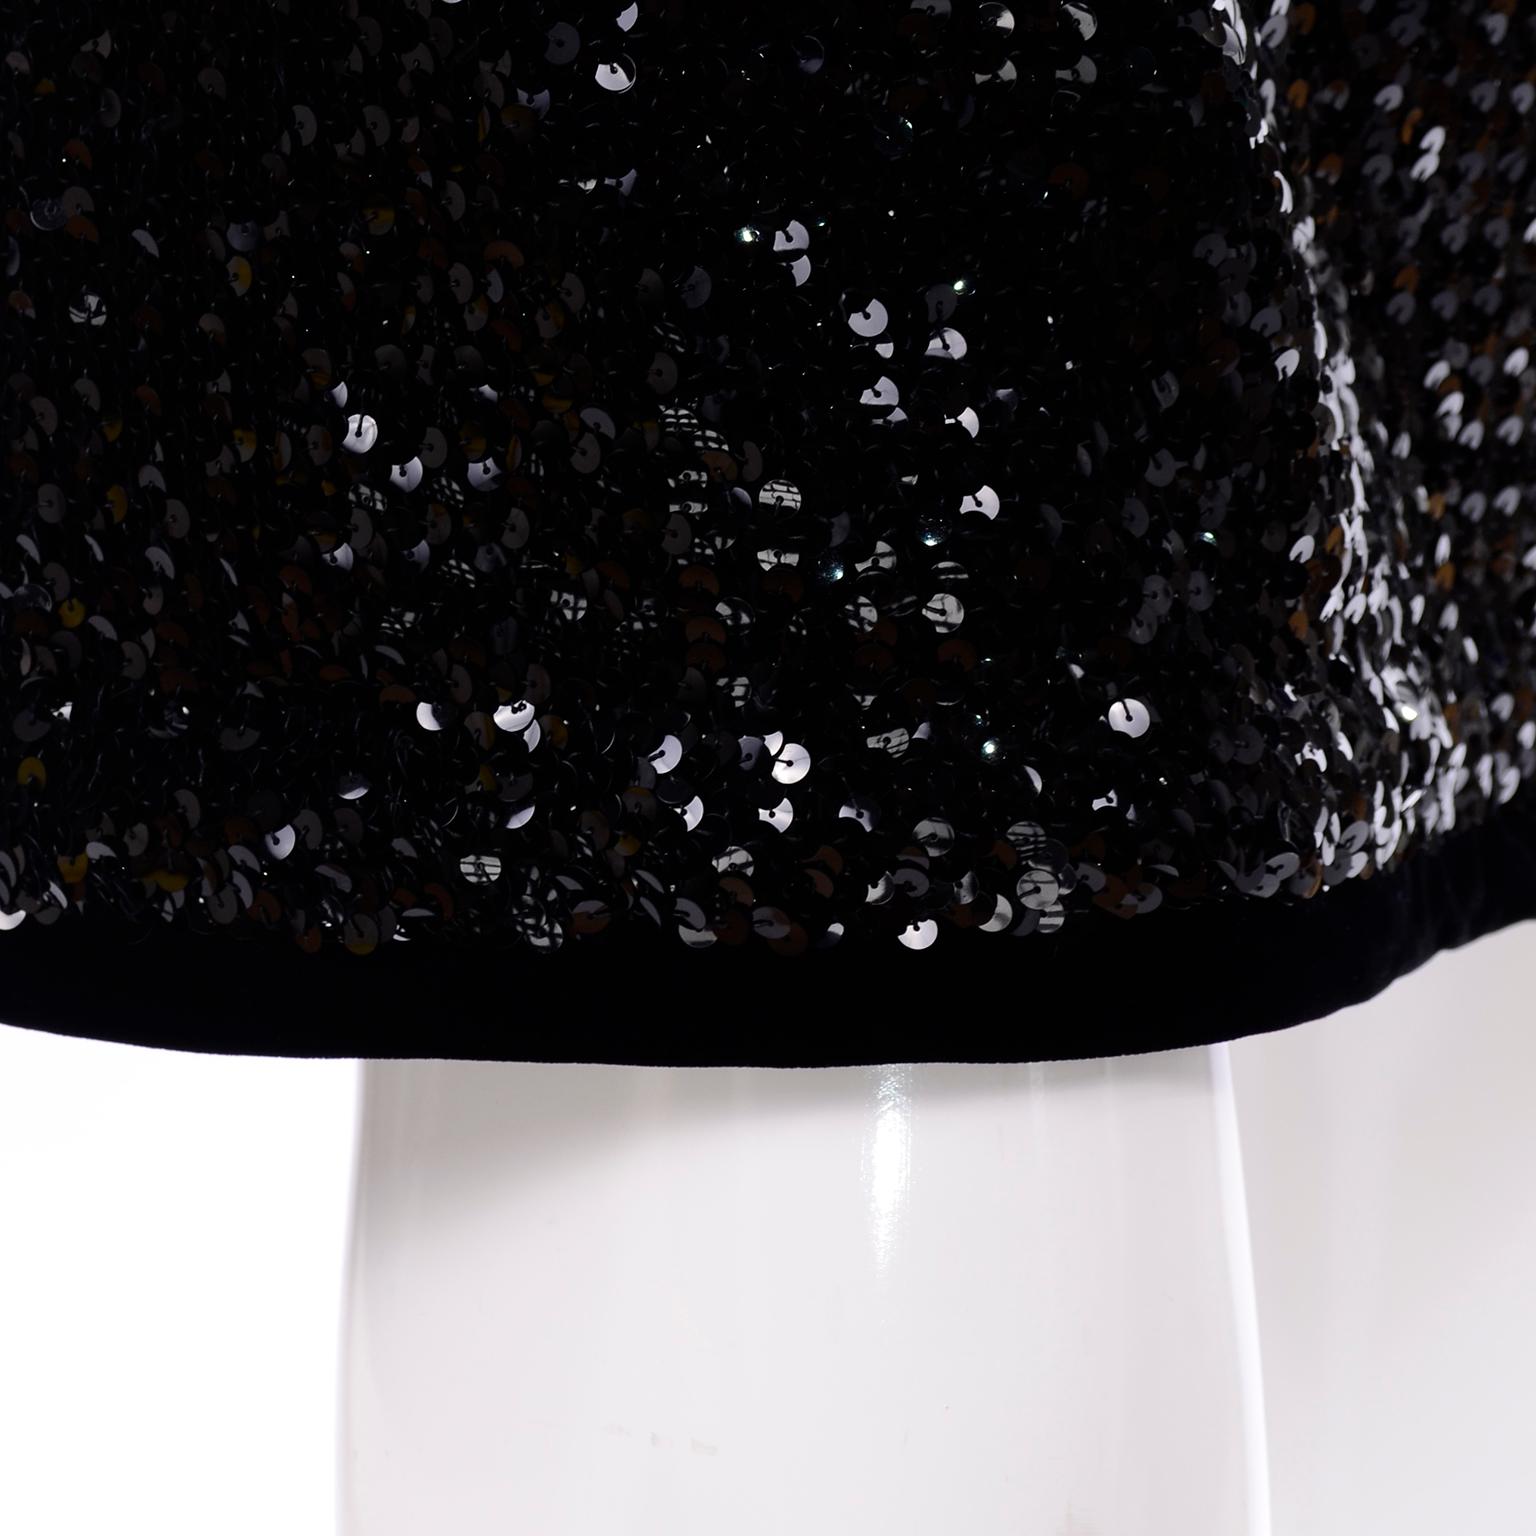 Women's Vintage Yves Saint Laurent Evening Dress Alternative Black Skirt Suit W/ Sequins